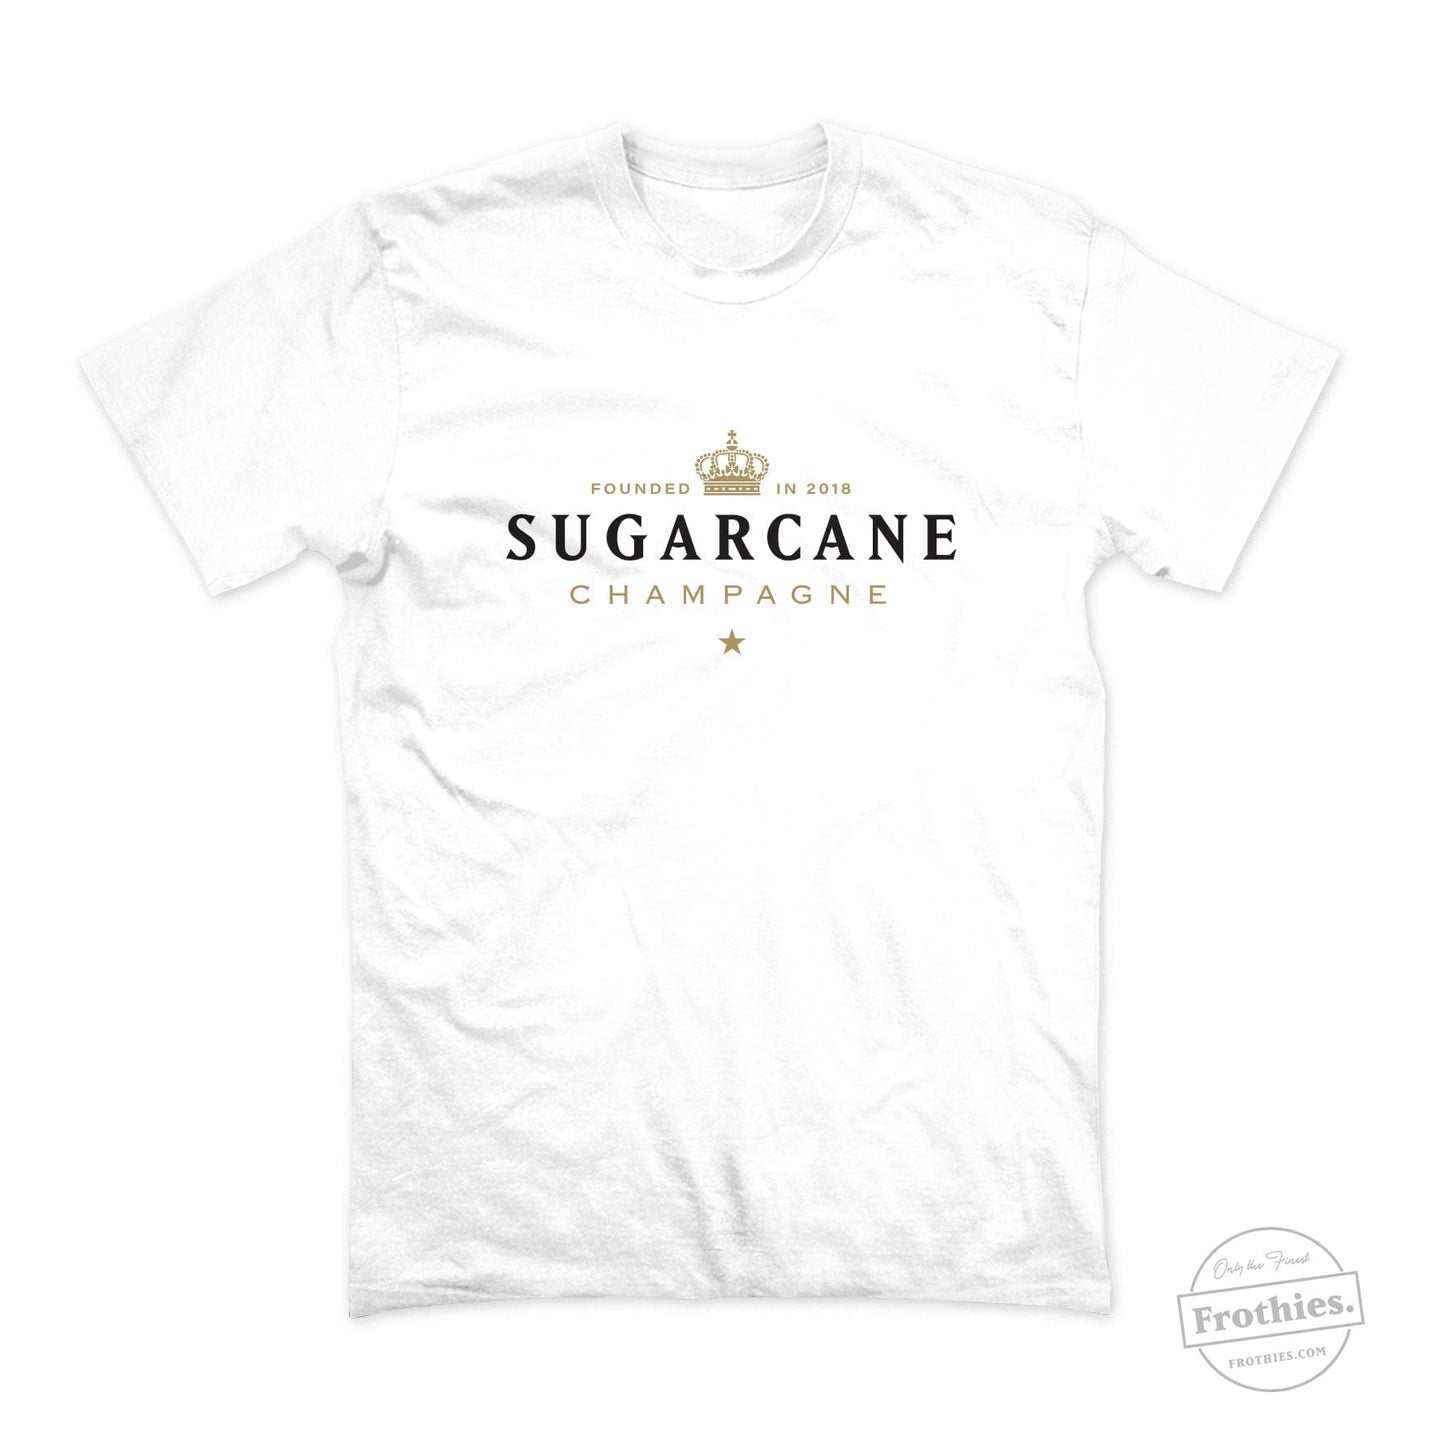 Sugar Cane Champagne Tee T-Shirt Cane Cutters